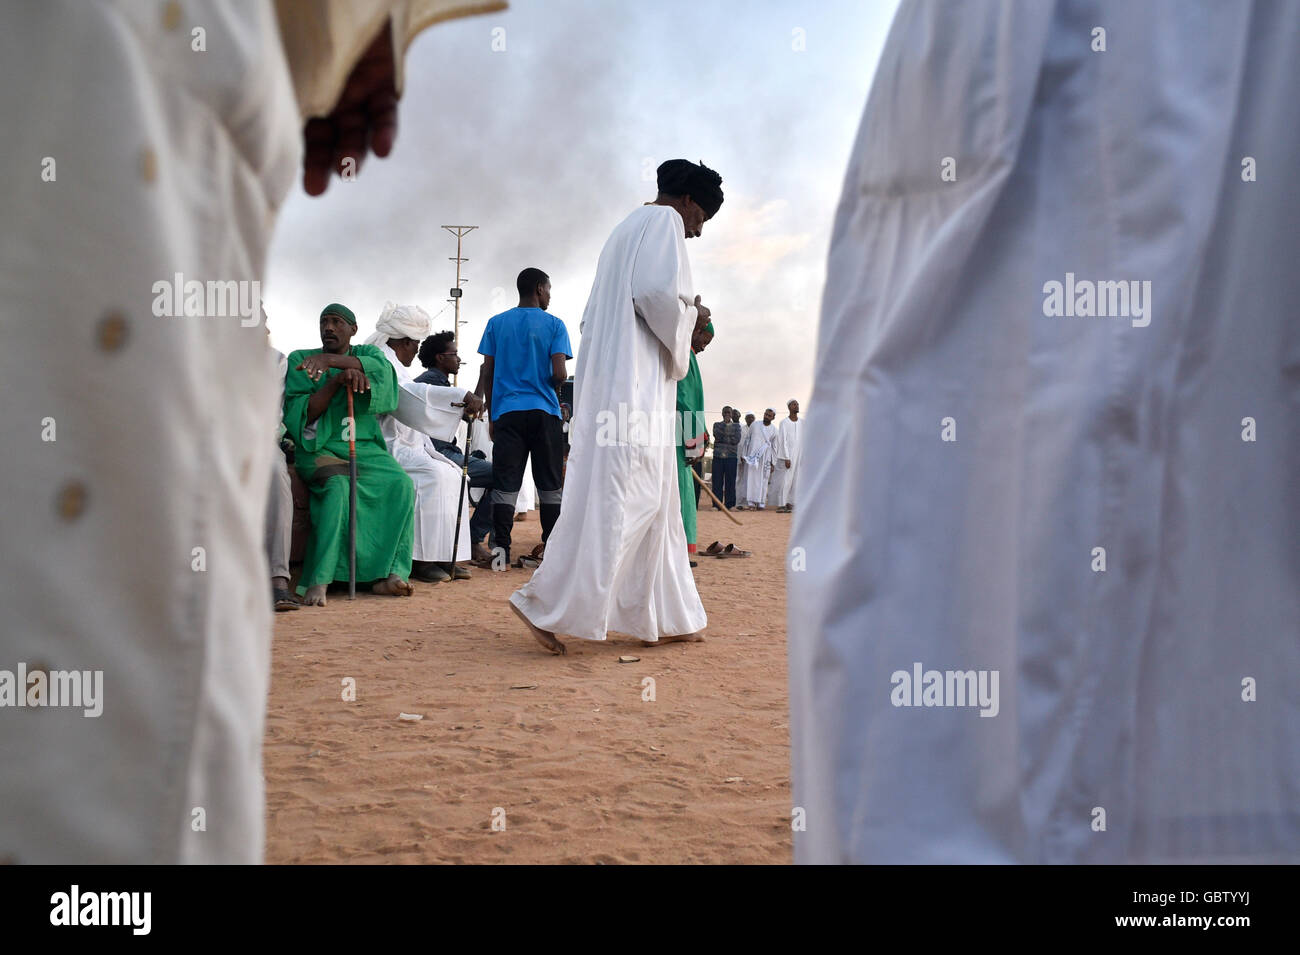 Africa, Sudan, Omdurman, Hamid El-Nil mosque, Halgt Zikr ceremony Stock Photo